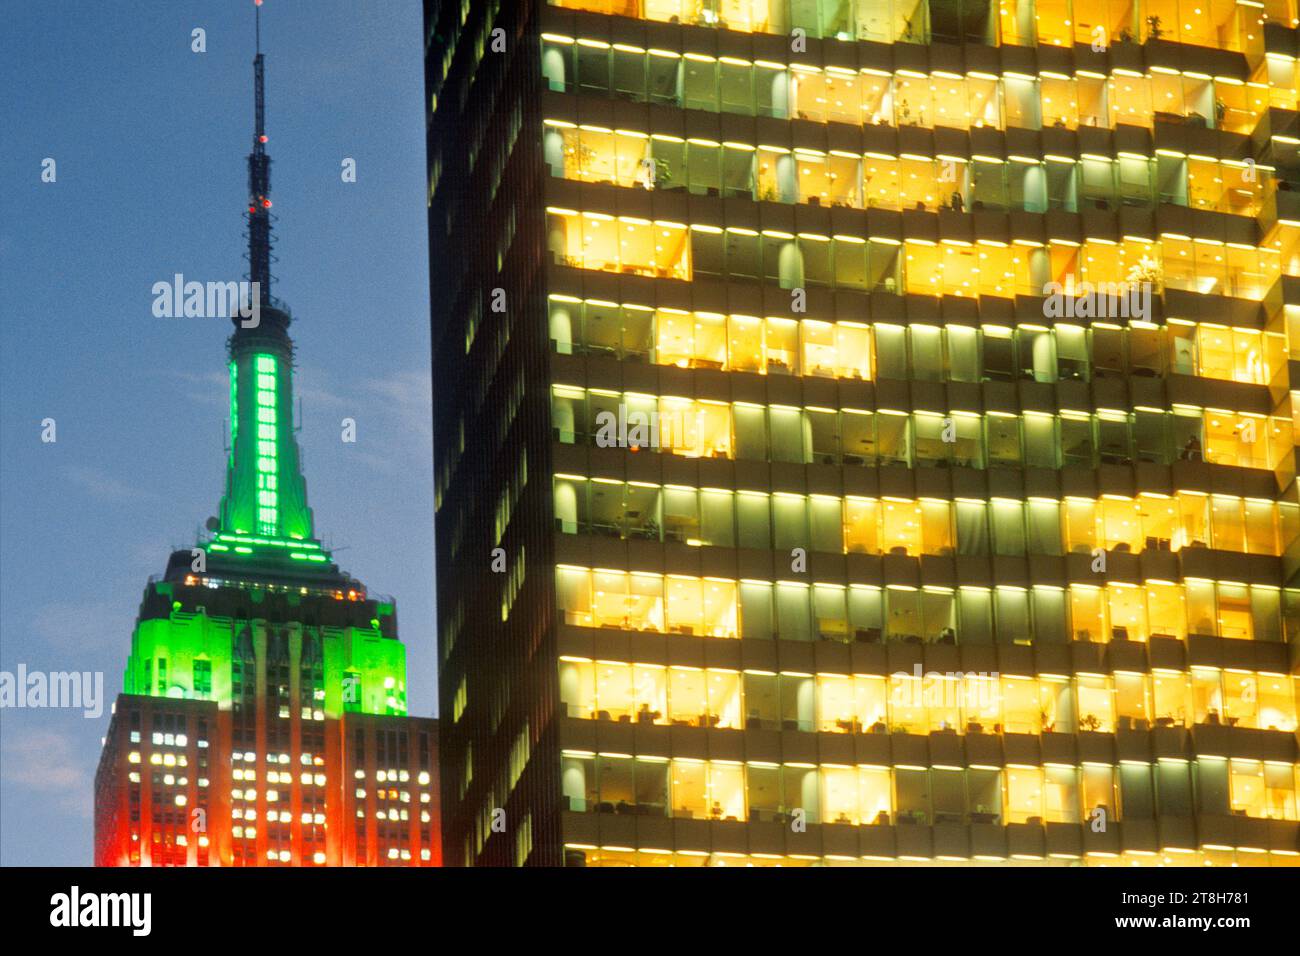 Lumières de Noël de l'Empire State Building la nuit ou au crépuscule. New York City Midtown Manhattan immeubles de bureaux gratte-ciel illuminés sur la Cinquième Avenue. ÉTATS-UNIS Banque D'Images